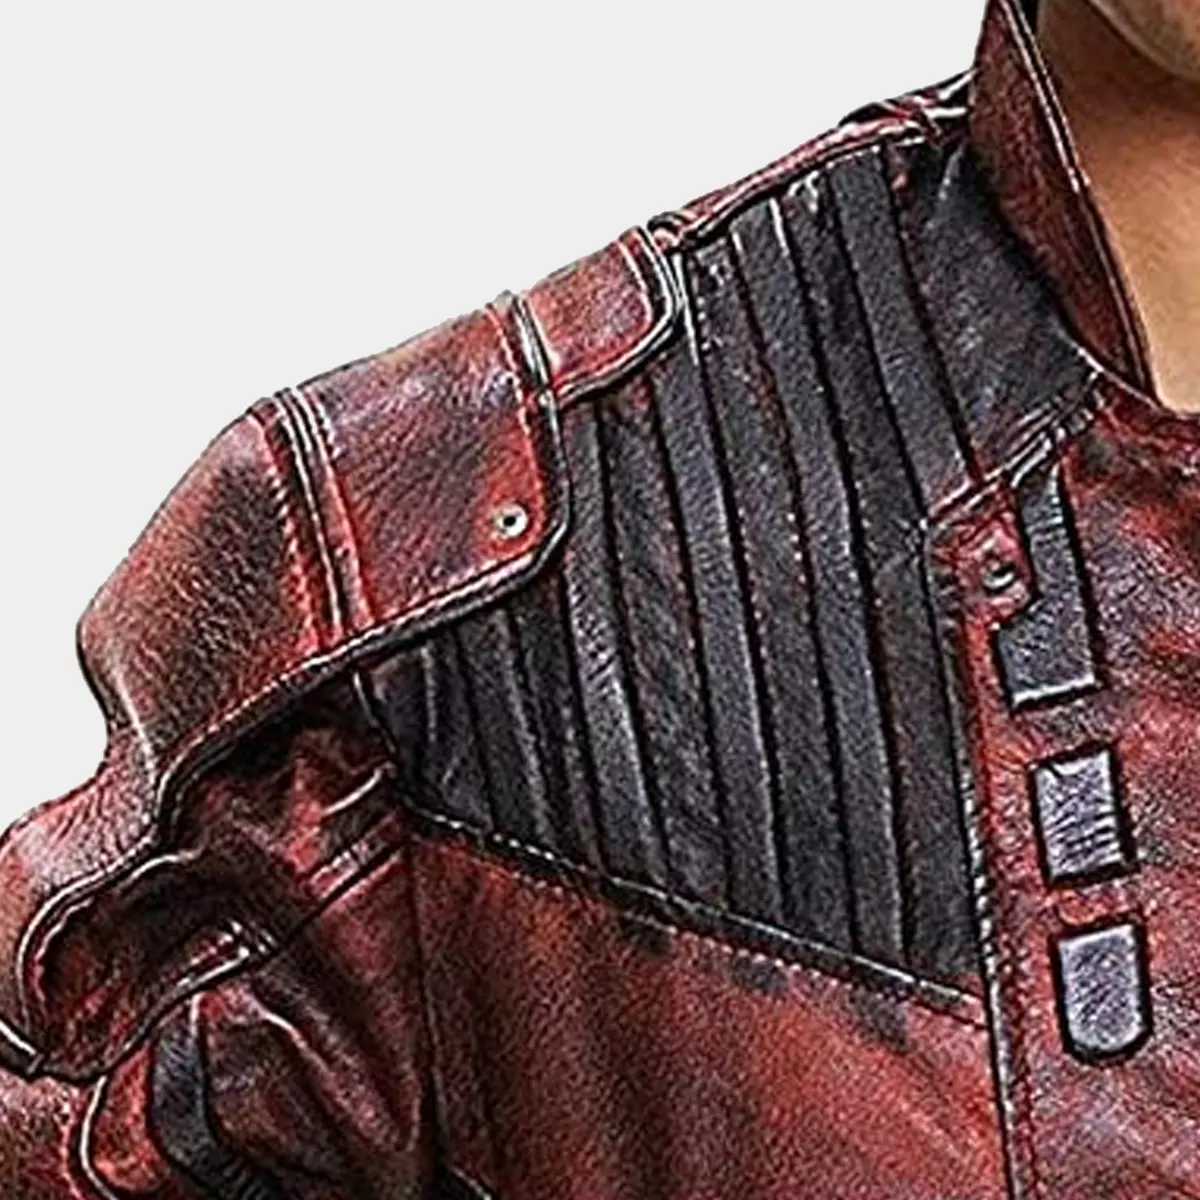 Chris Pratt Peter Maroon Leather Jackets